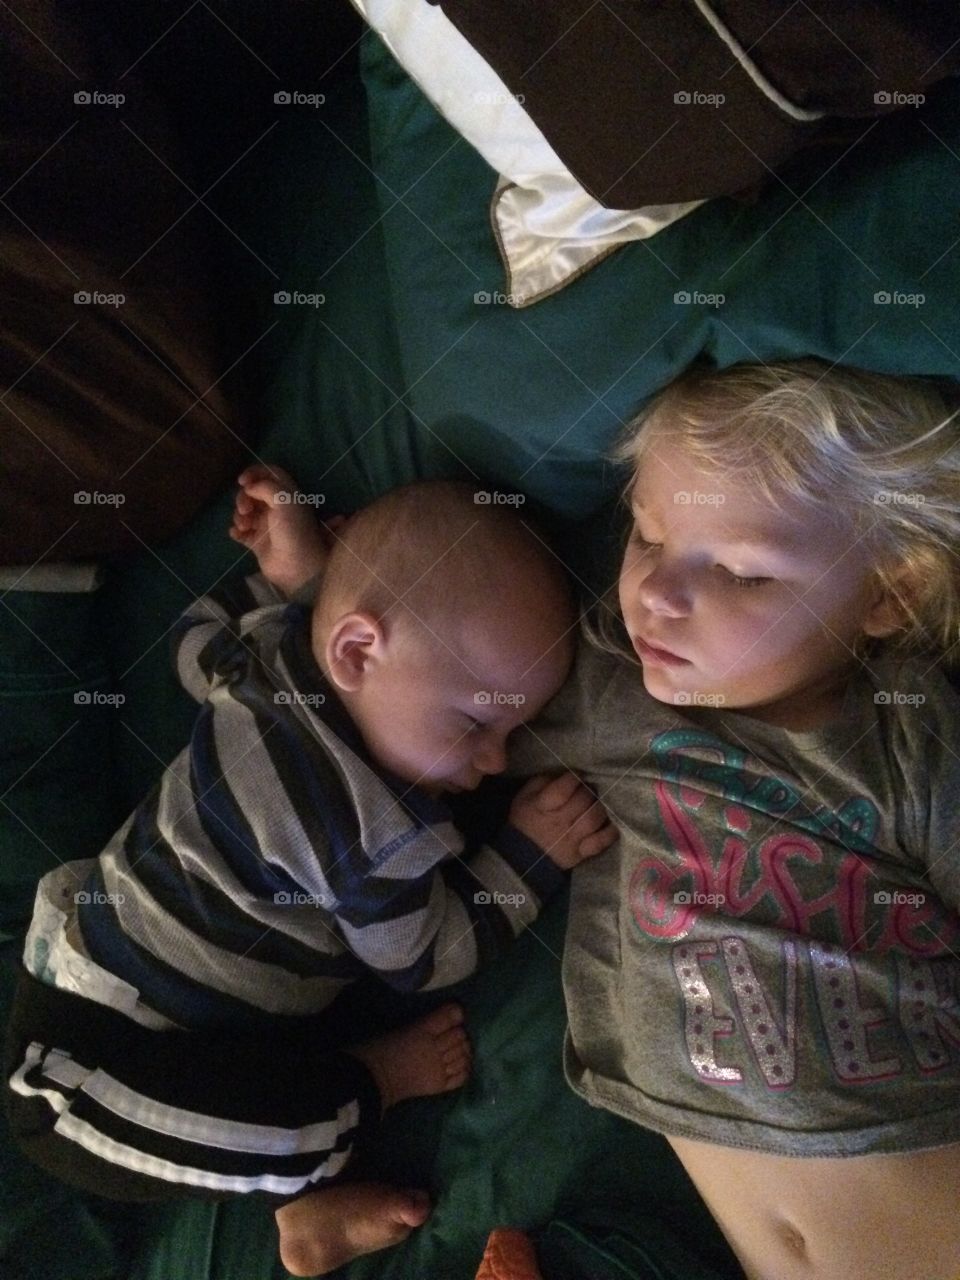 Sleeping babies!